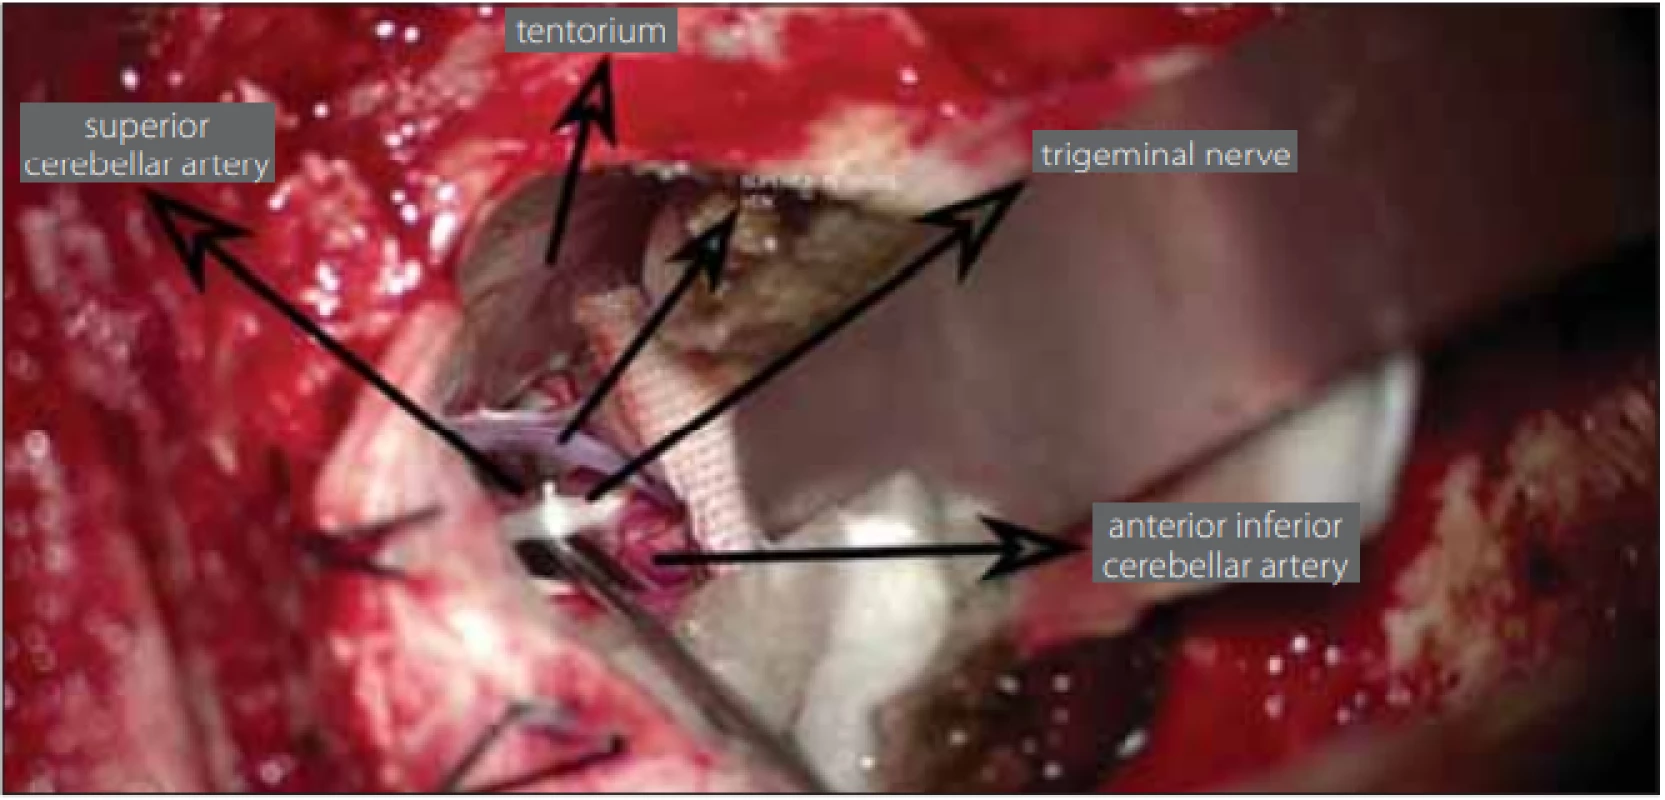 Placement of Tefl on between the trigeminal nerve and vascular structure.<br>
Obr. 1. Umístění tefl onu mezi trojklanný nerv a cévní strukturu.